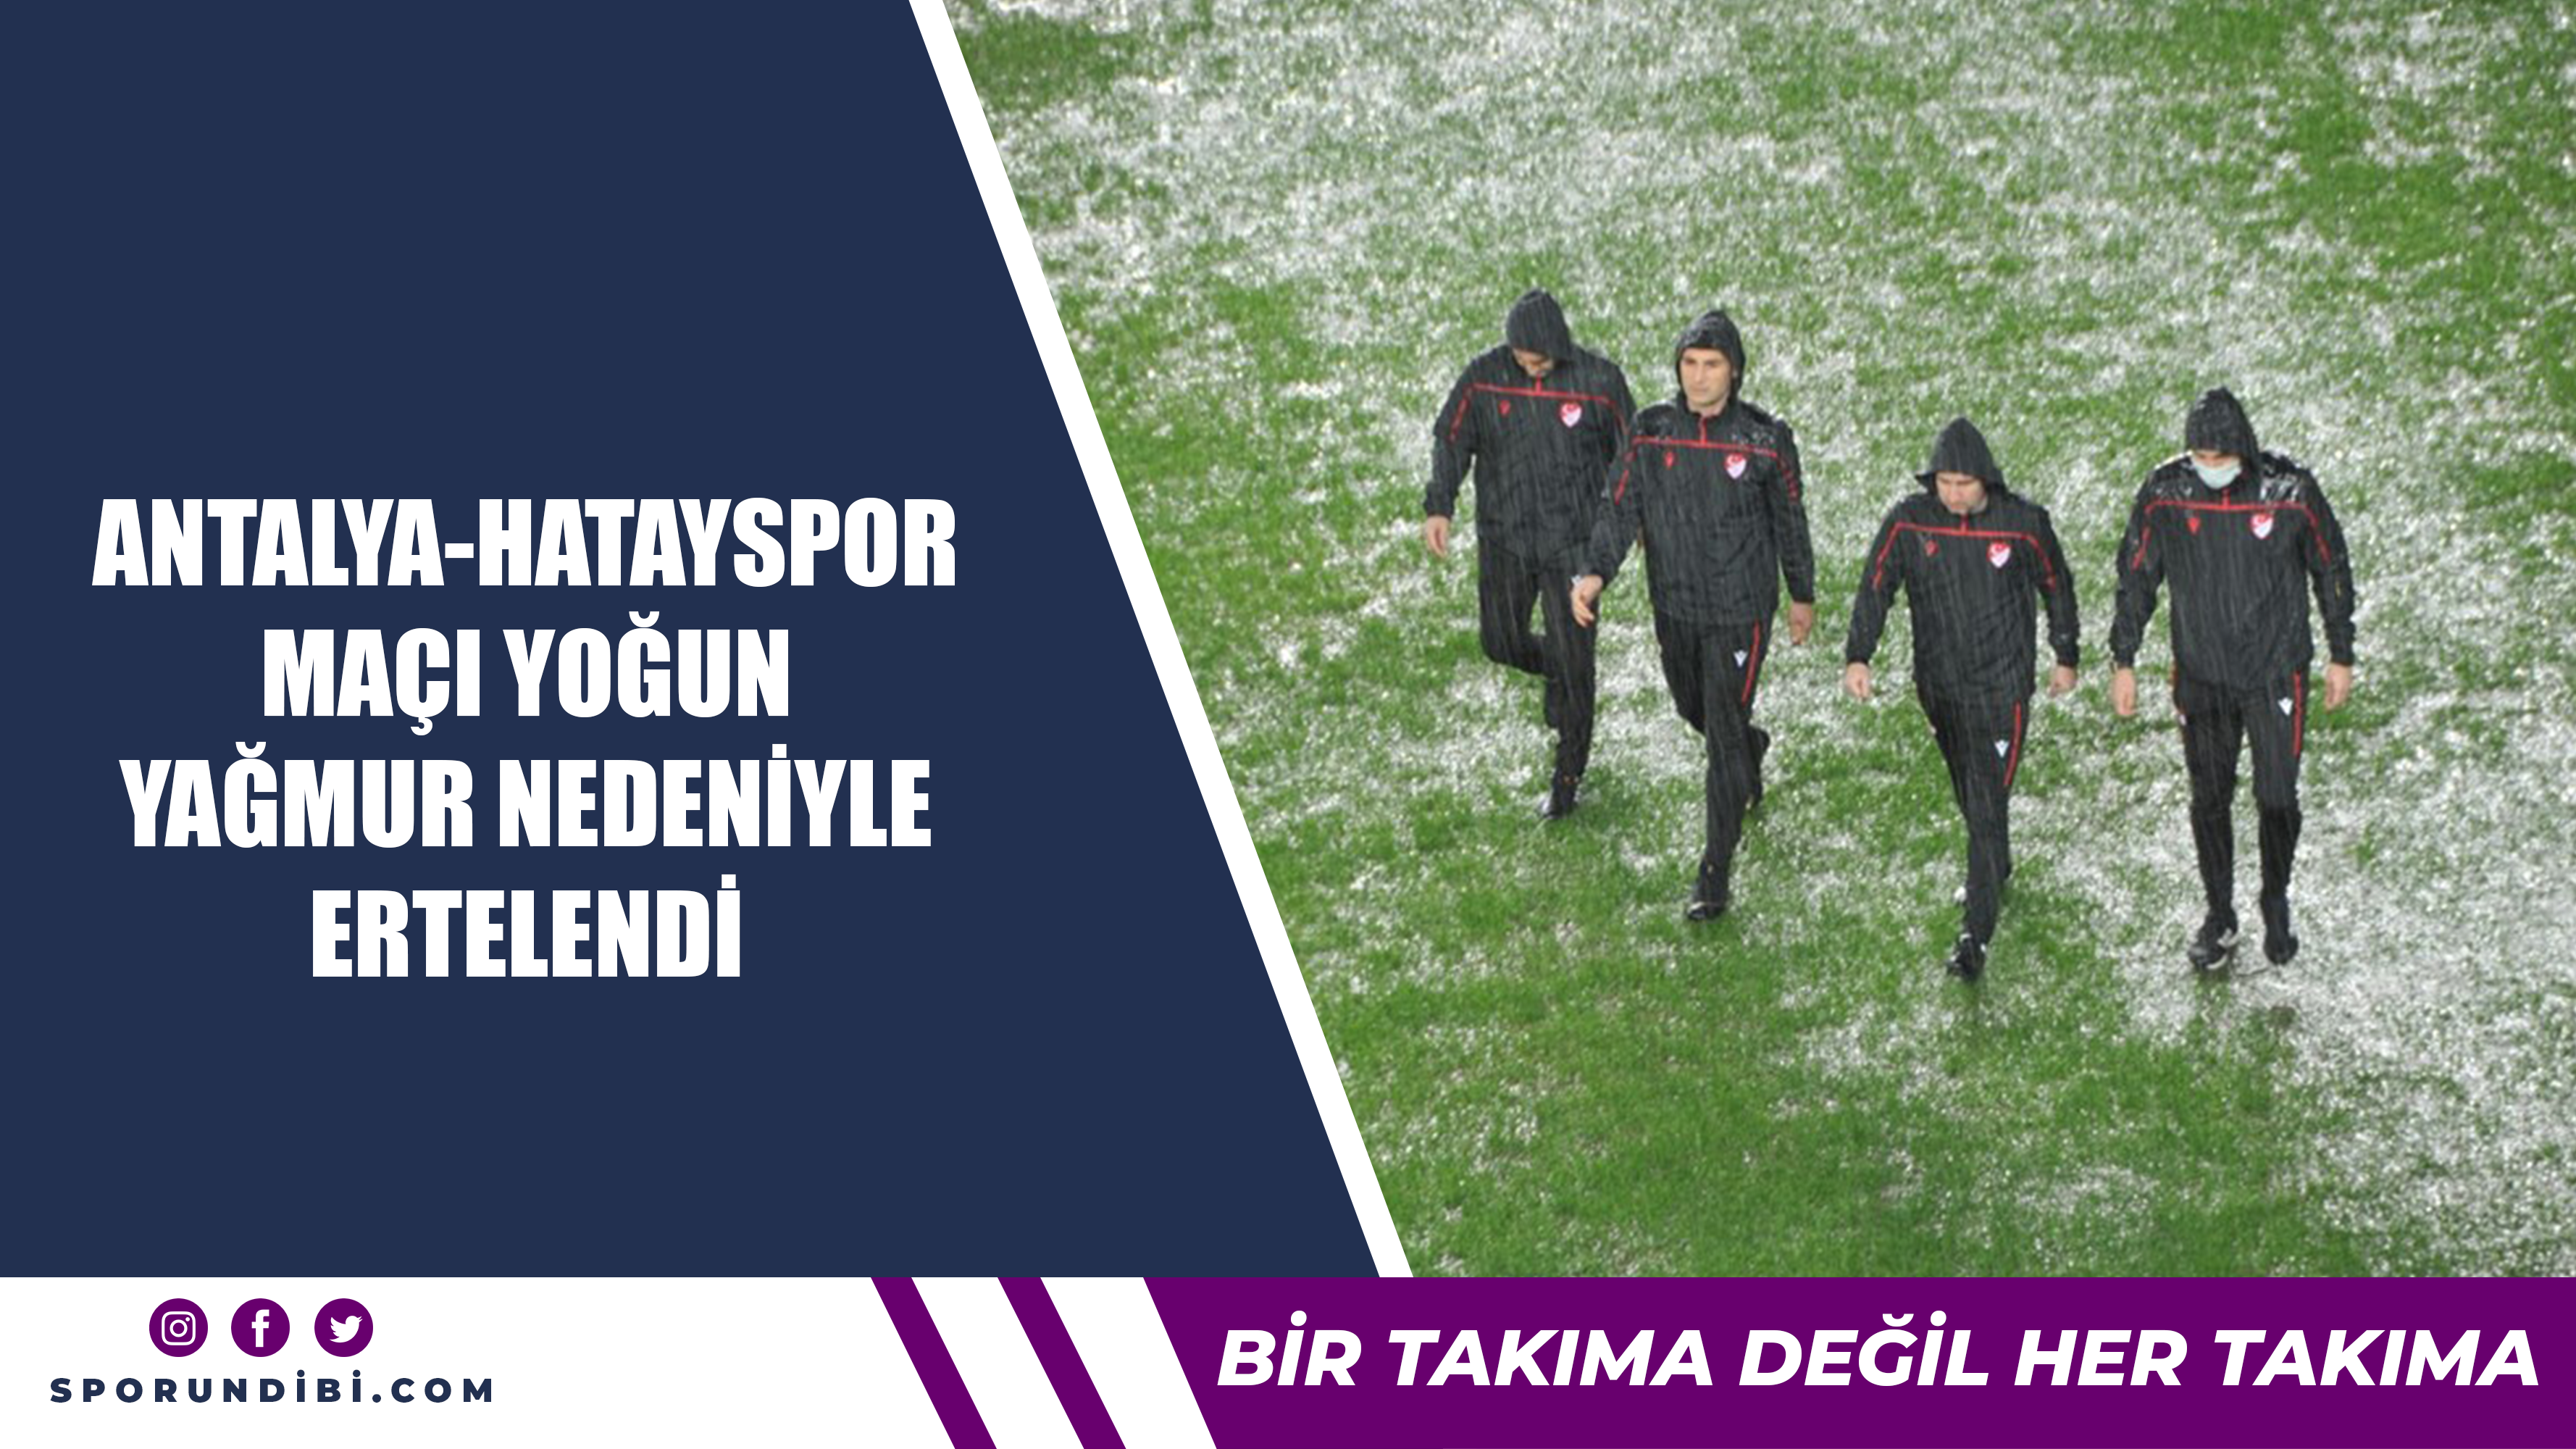 Antalya-Hatayspor maçı yoğun yağmur nedeniyle ertelendi...